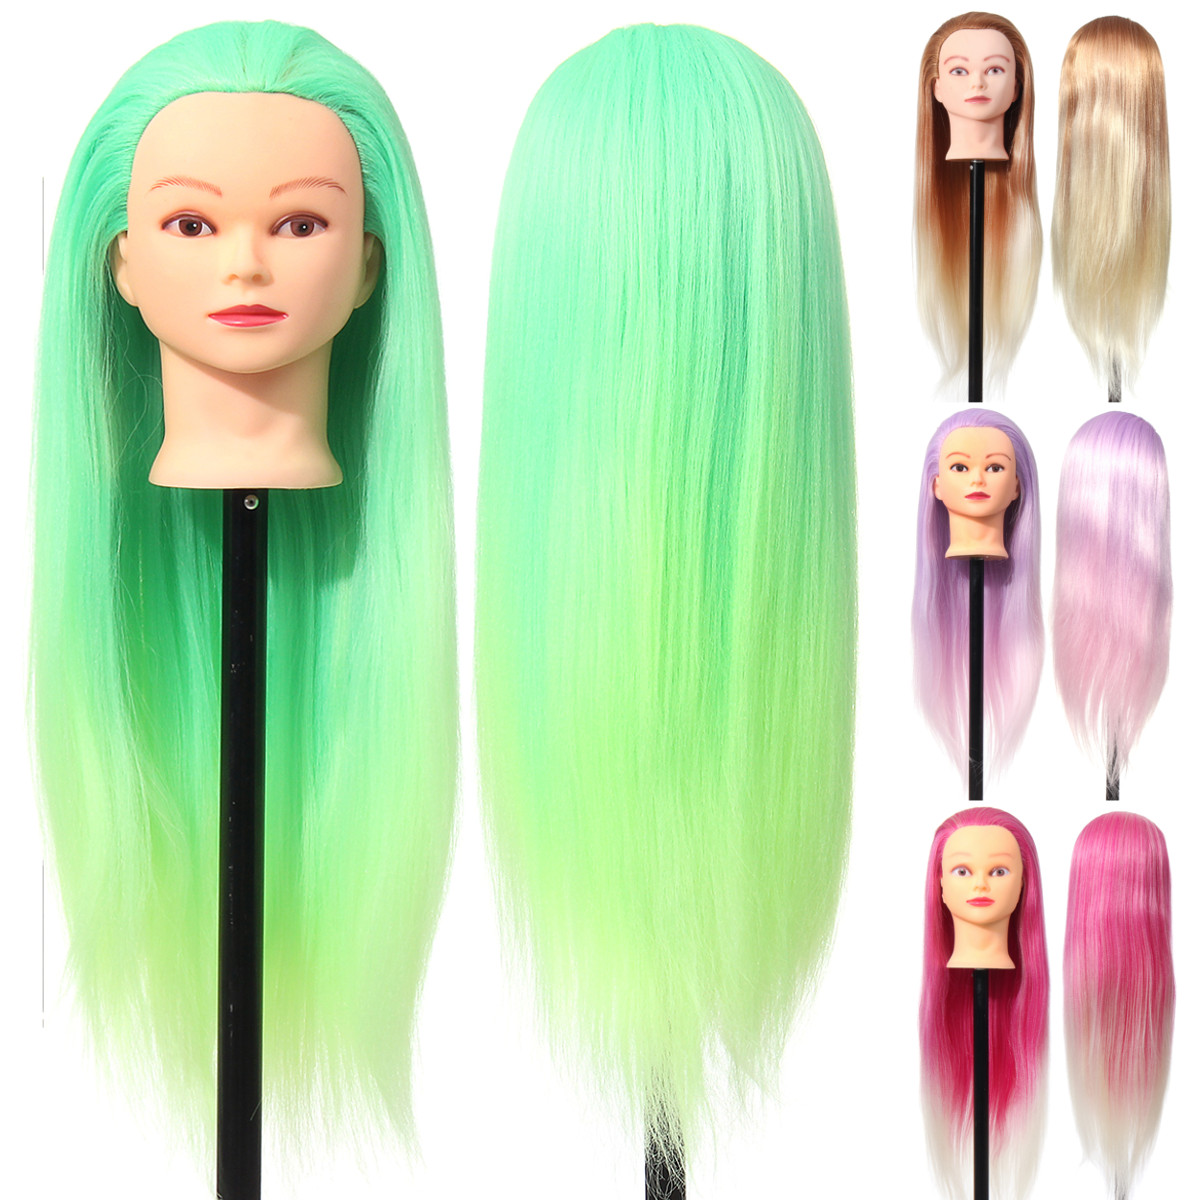 

27 Colorful Манекен-головка Волосы ВолосыОбучение Практика салона + Зажим